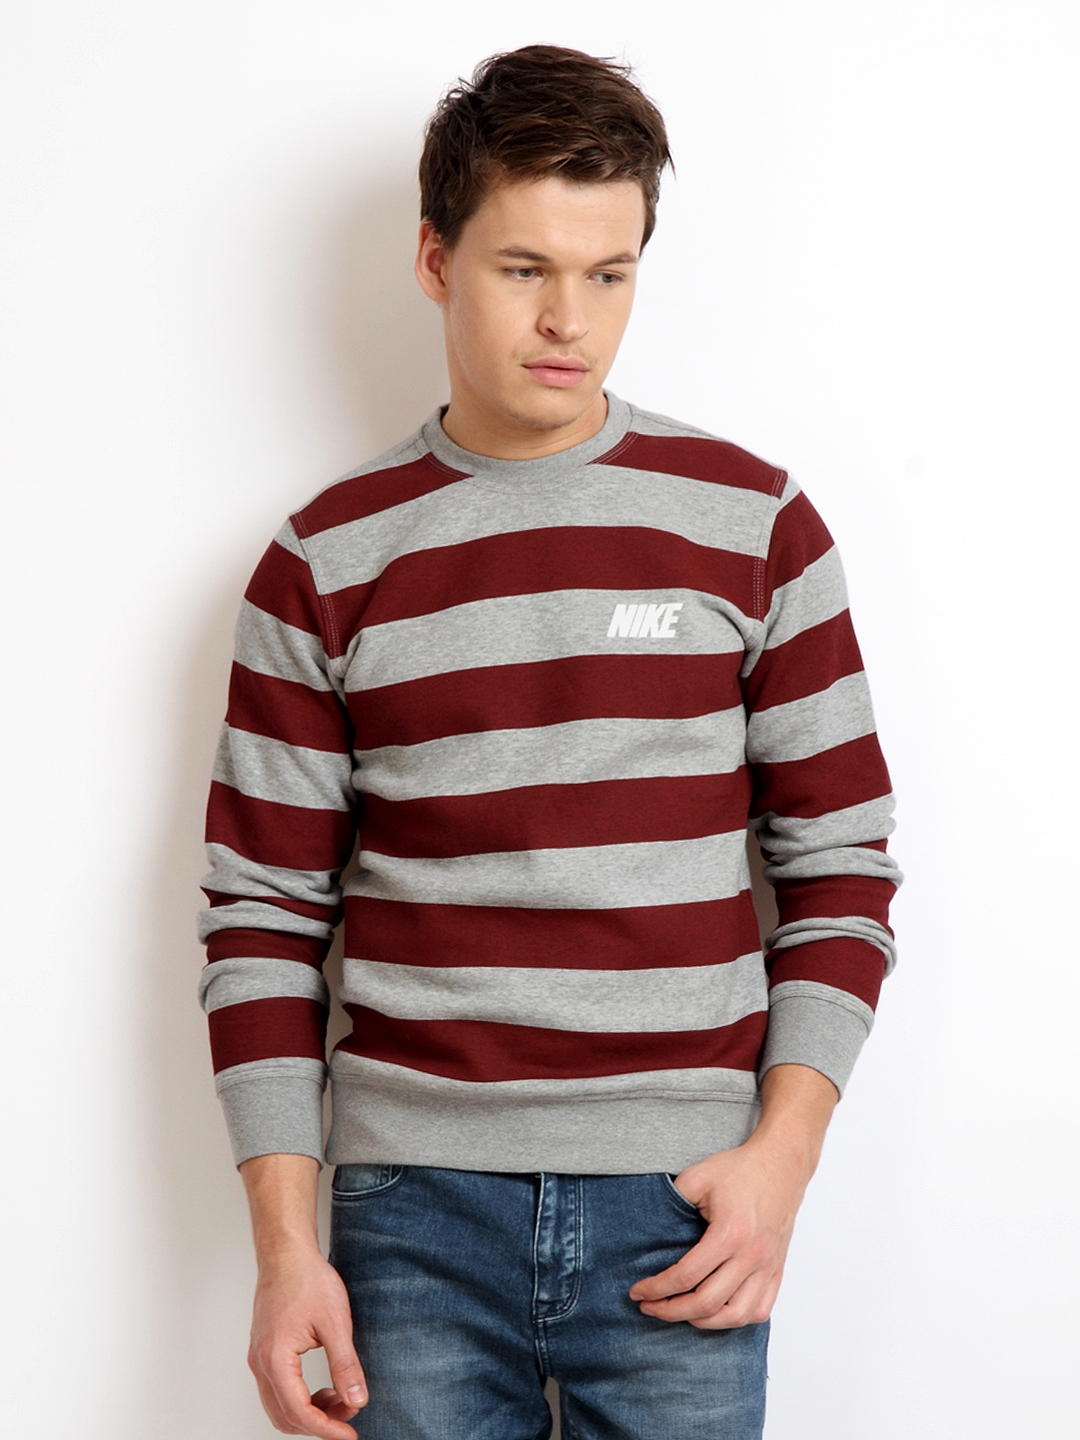 Download Buy Nike Men Grey Melange & Red Striped Sweatshirt ...